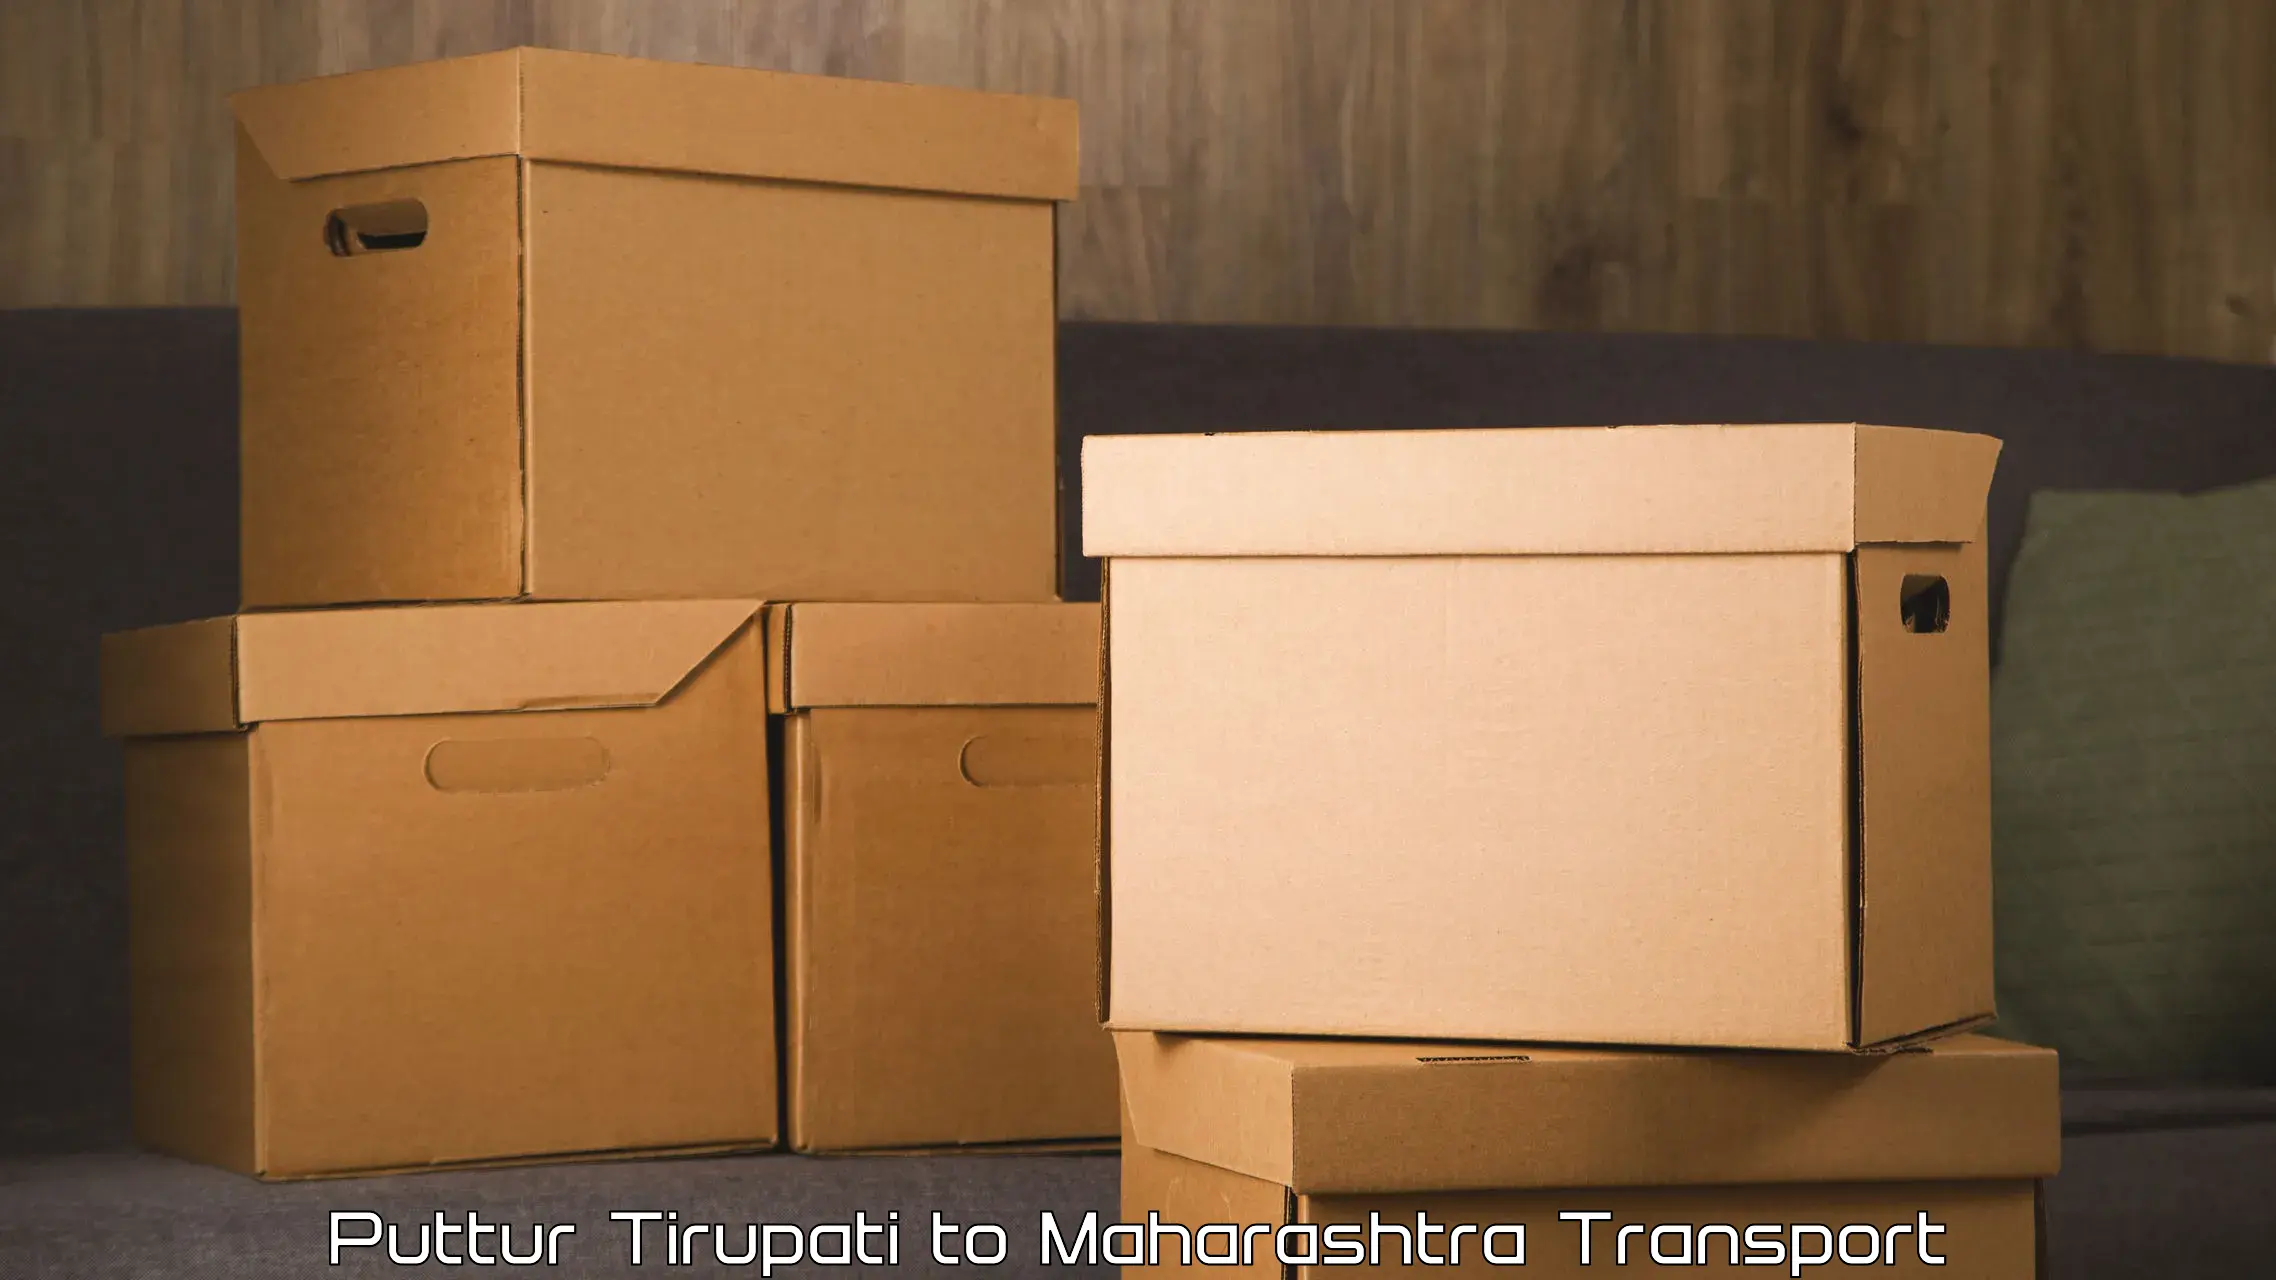 Air freight transport services Puttur Tirupati to Mumbai Port